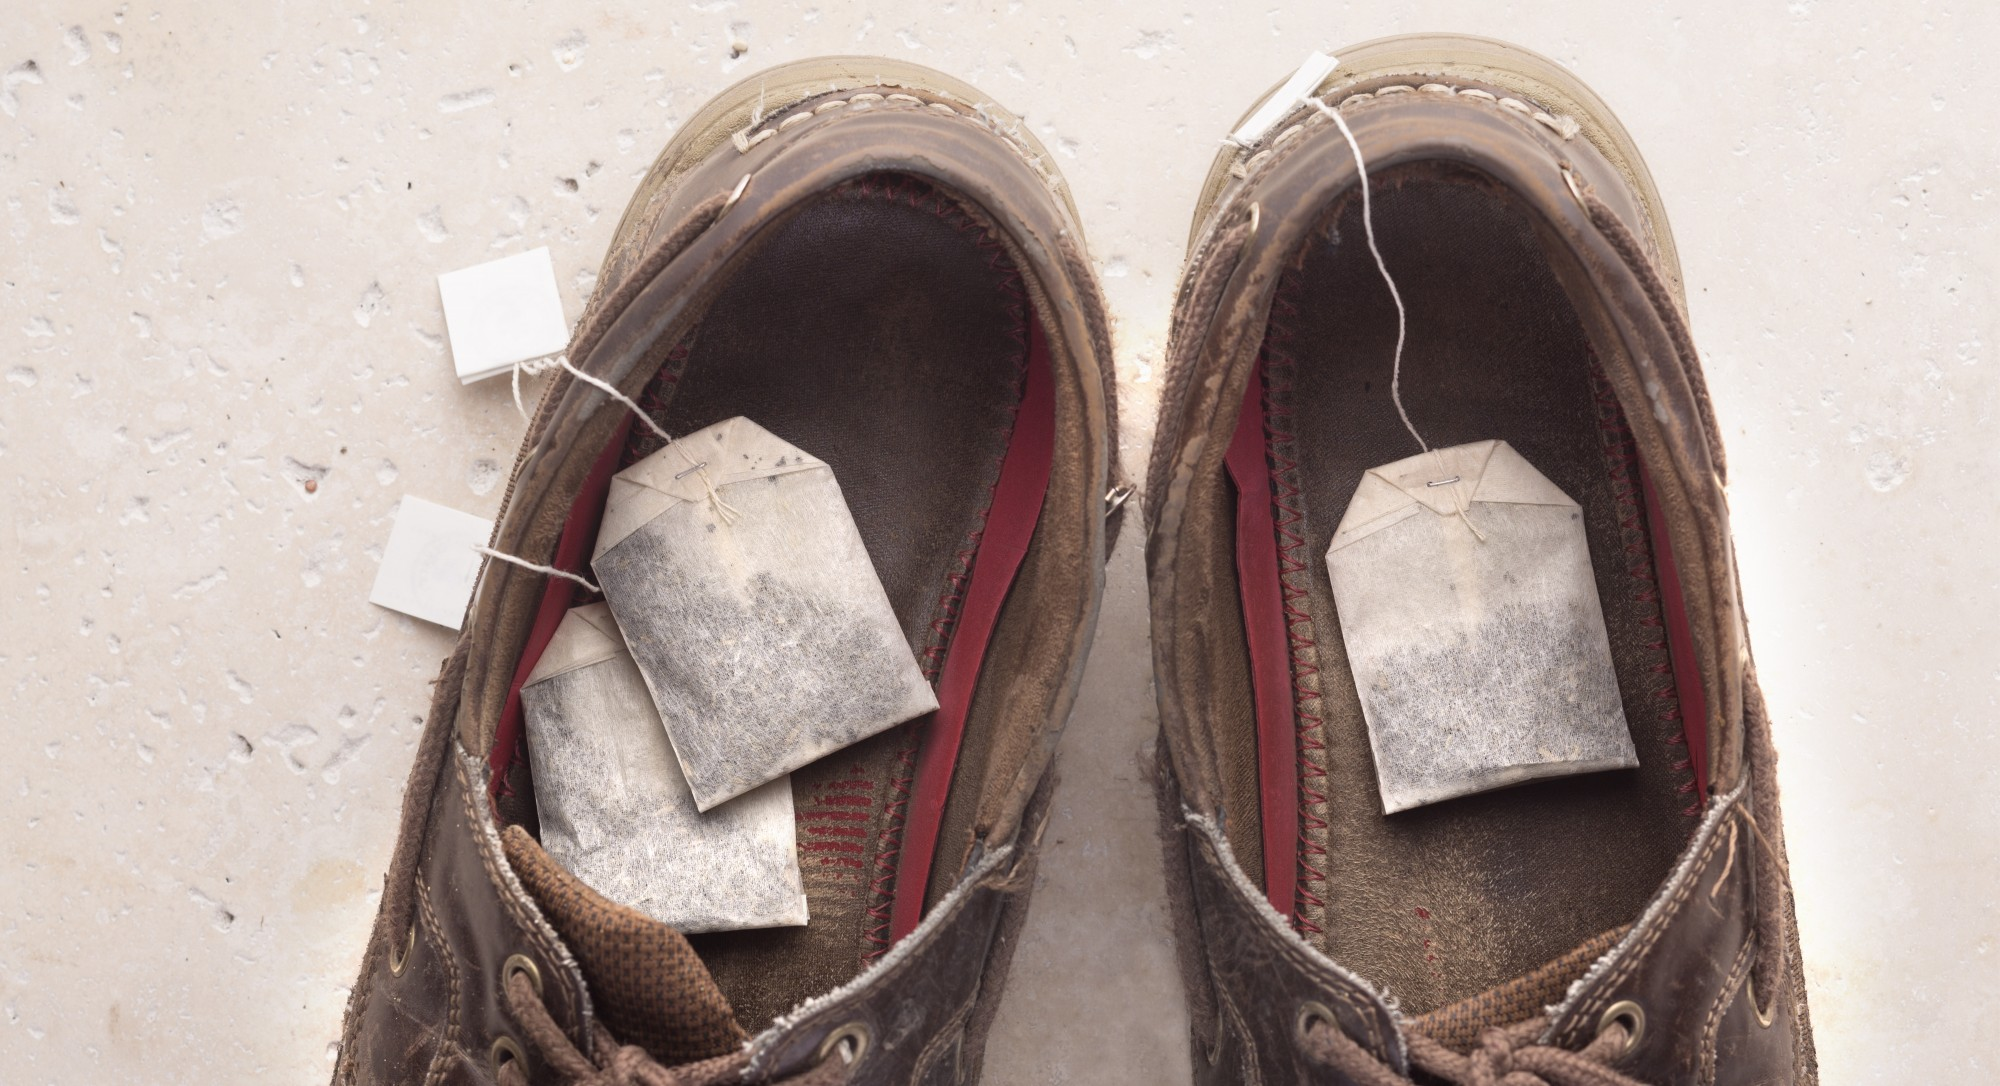 На обуви плесень: спасти или выкинуть?